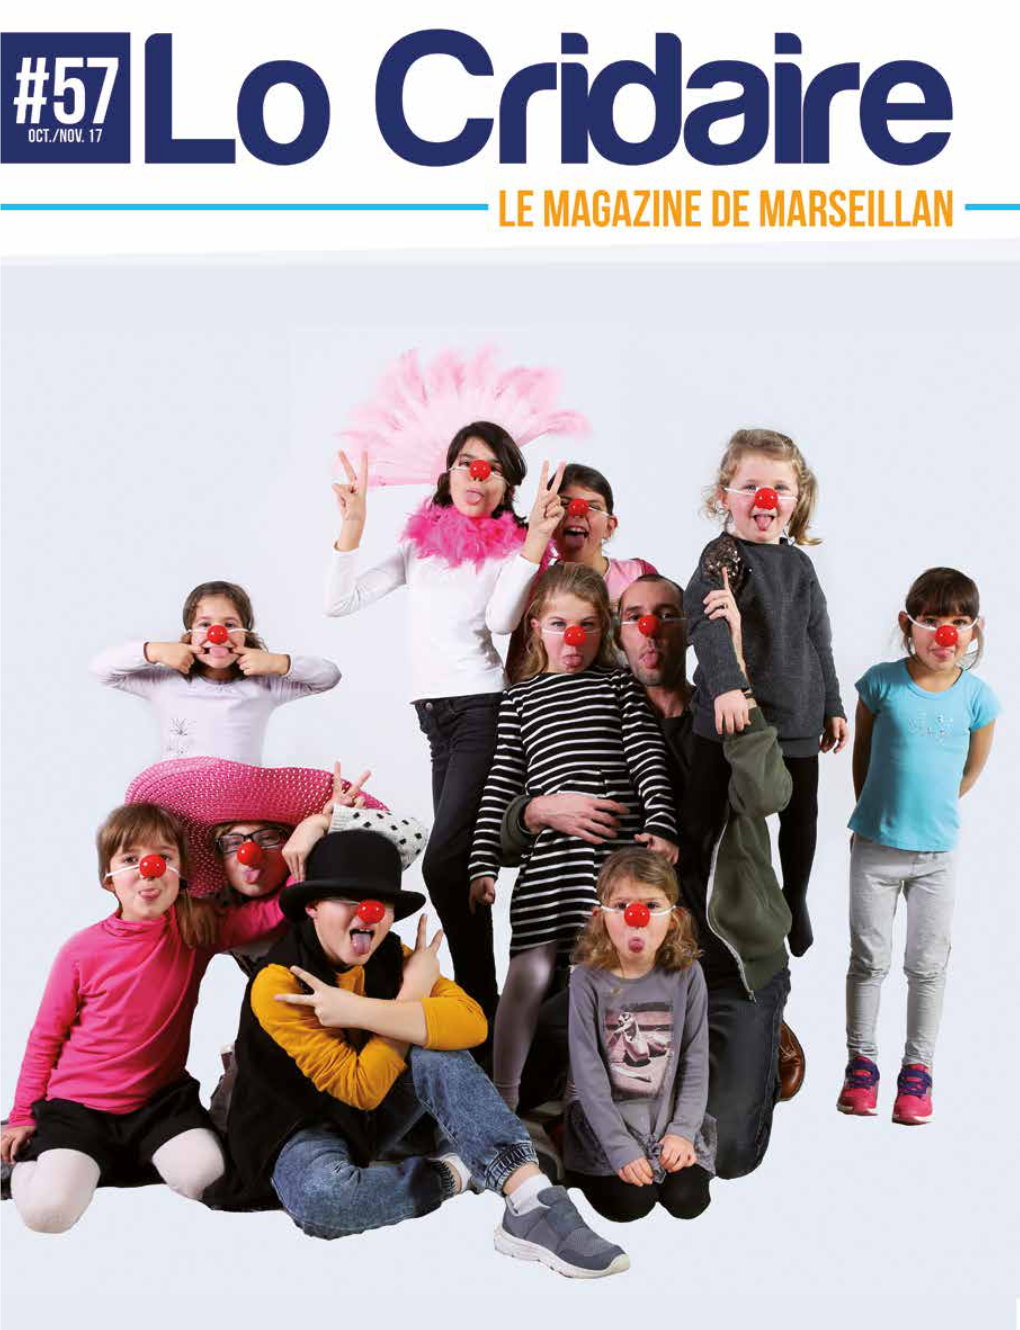 Lo Cridaire N°57 - Octobre/Novembre 2017 - Le Magazine De Marseillan ACTUS Des Festivités, Des Rencontres, Des Traditions… Et Beaucoup De Monde !